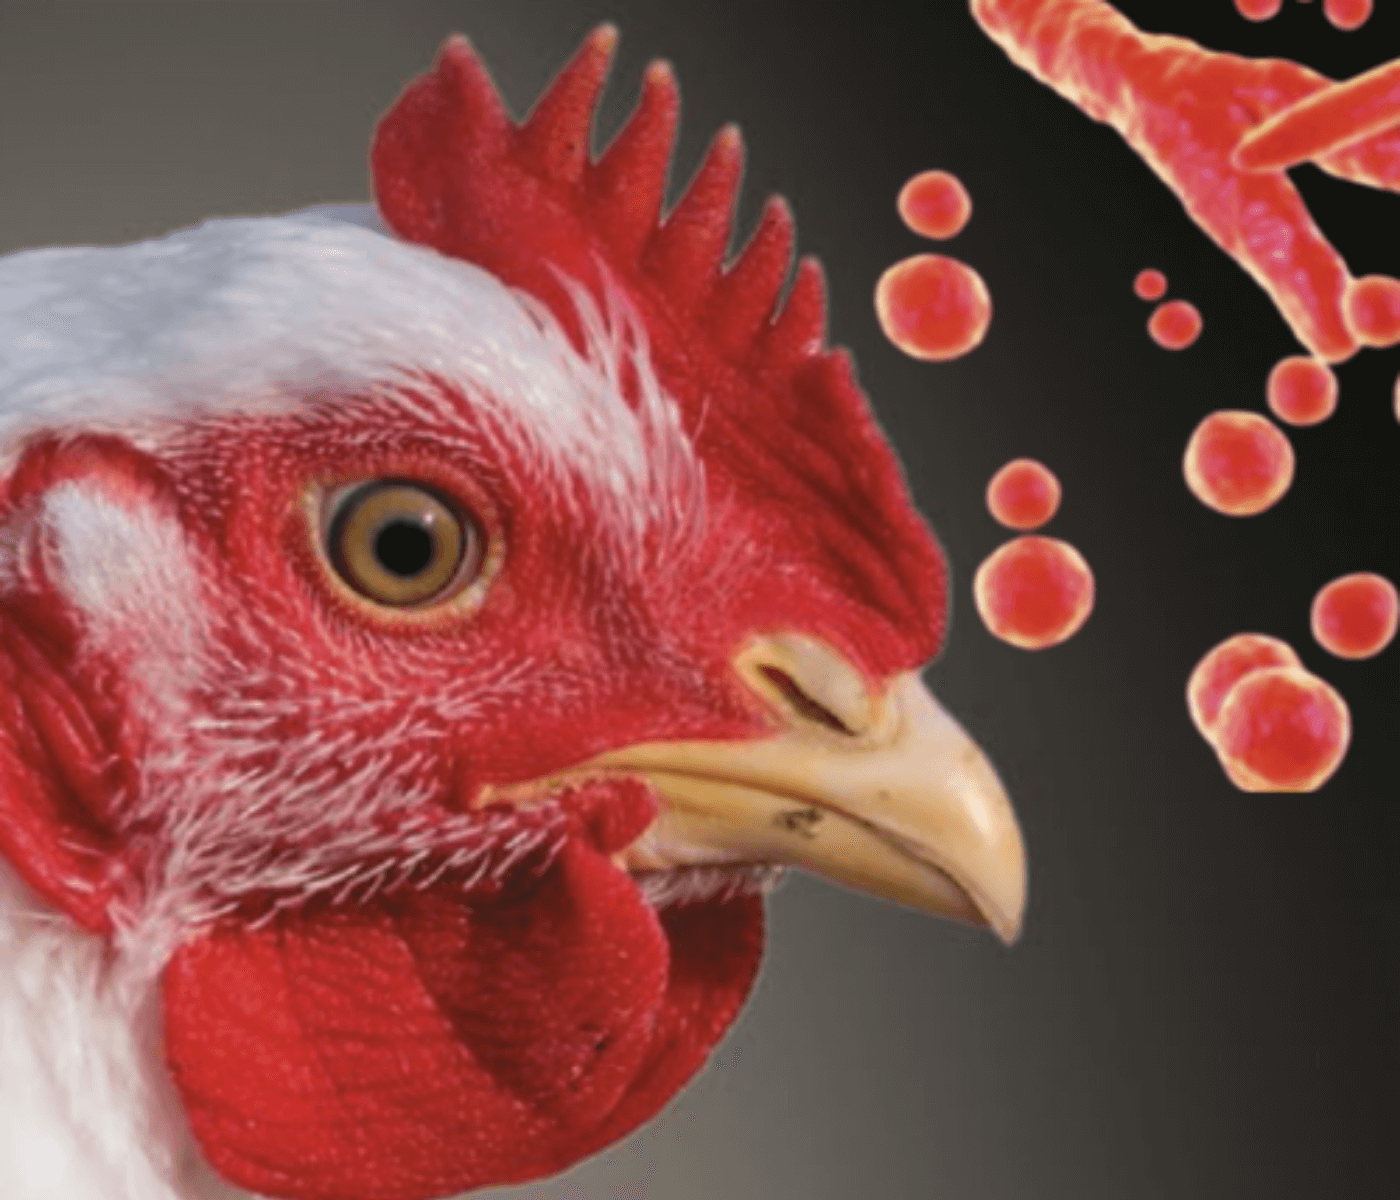 Manejo e cuidados na criação de frangos de corte com foco em prevenir quadros de aerossaculite